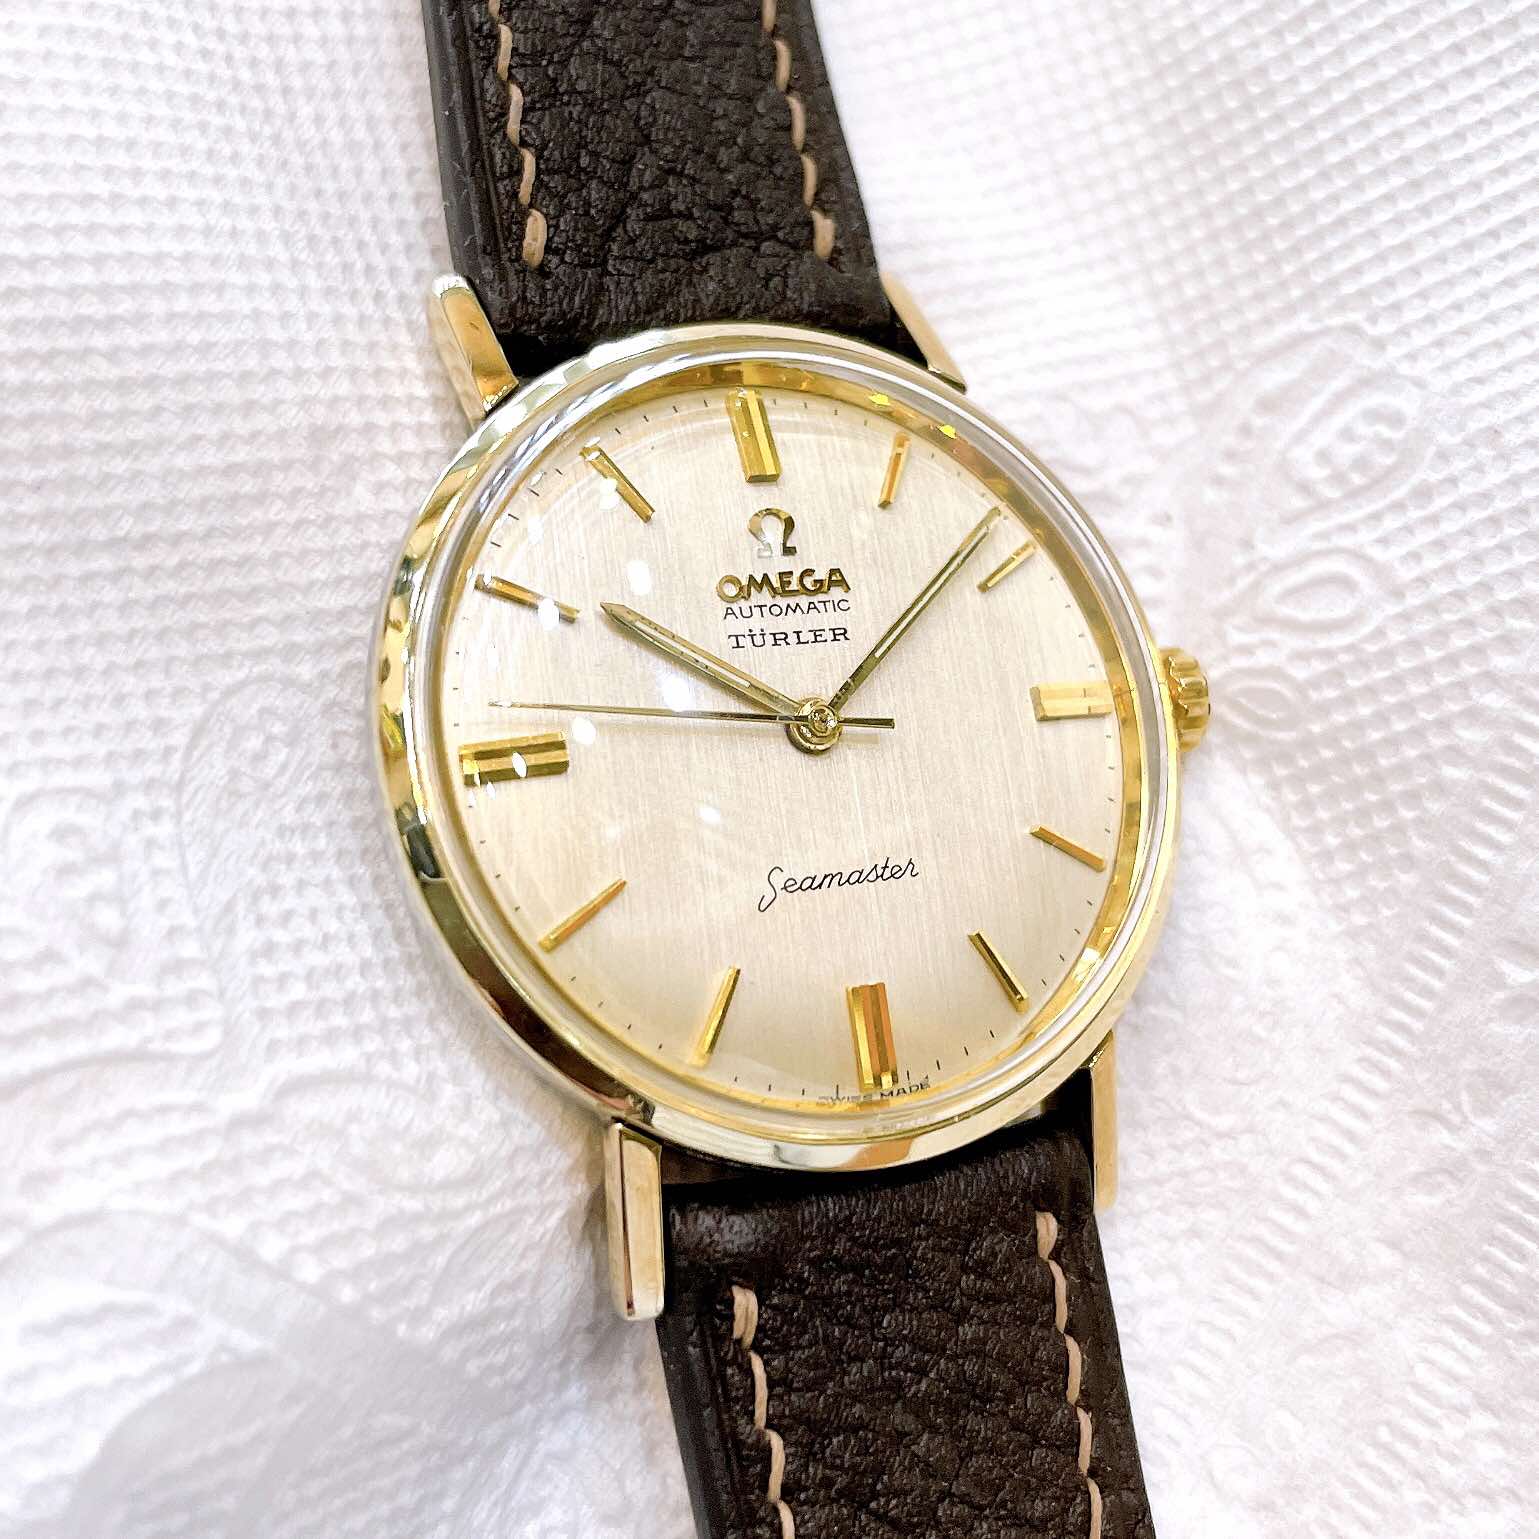 Đồng hồ cổ Omega seamaster TURLER automatic DMi chính hãng Thụy Sĩ 